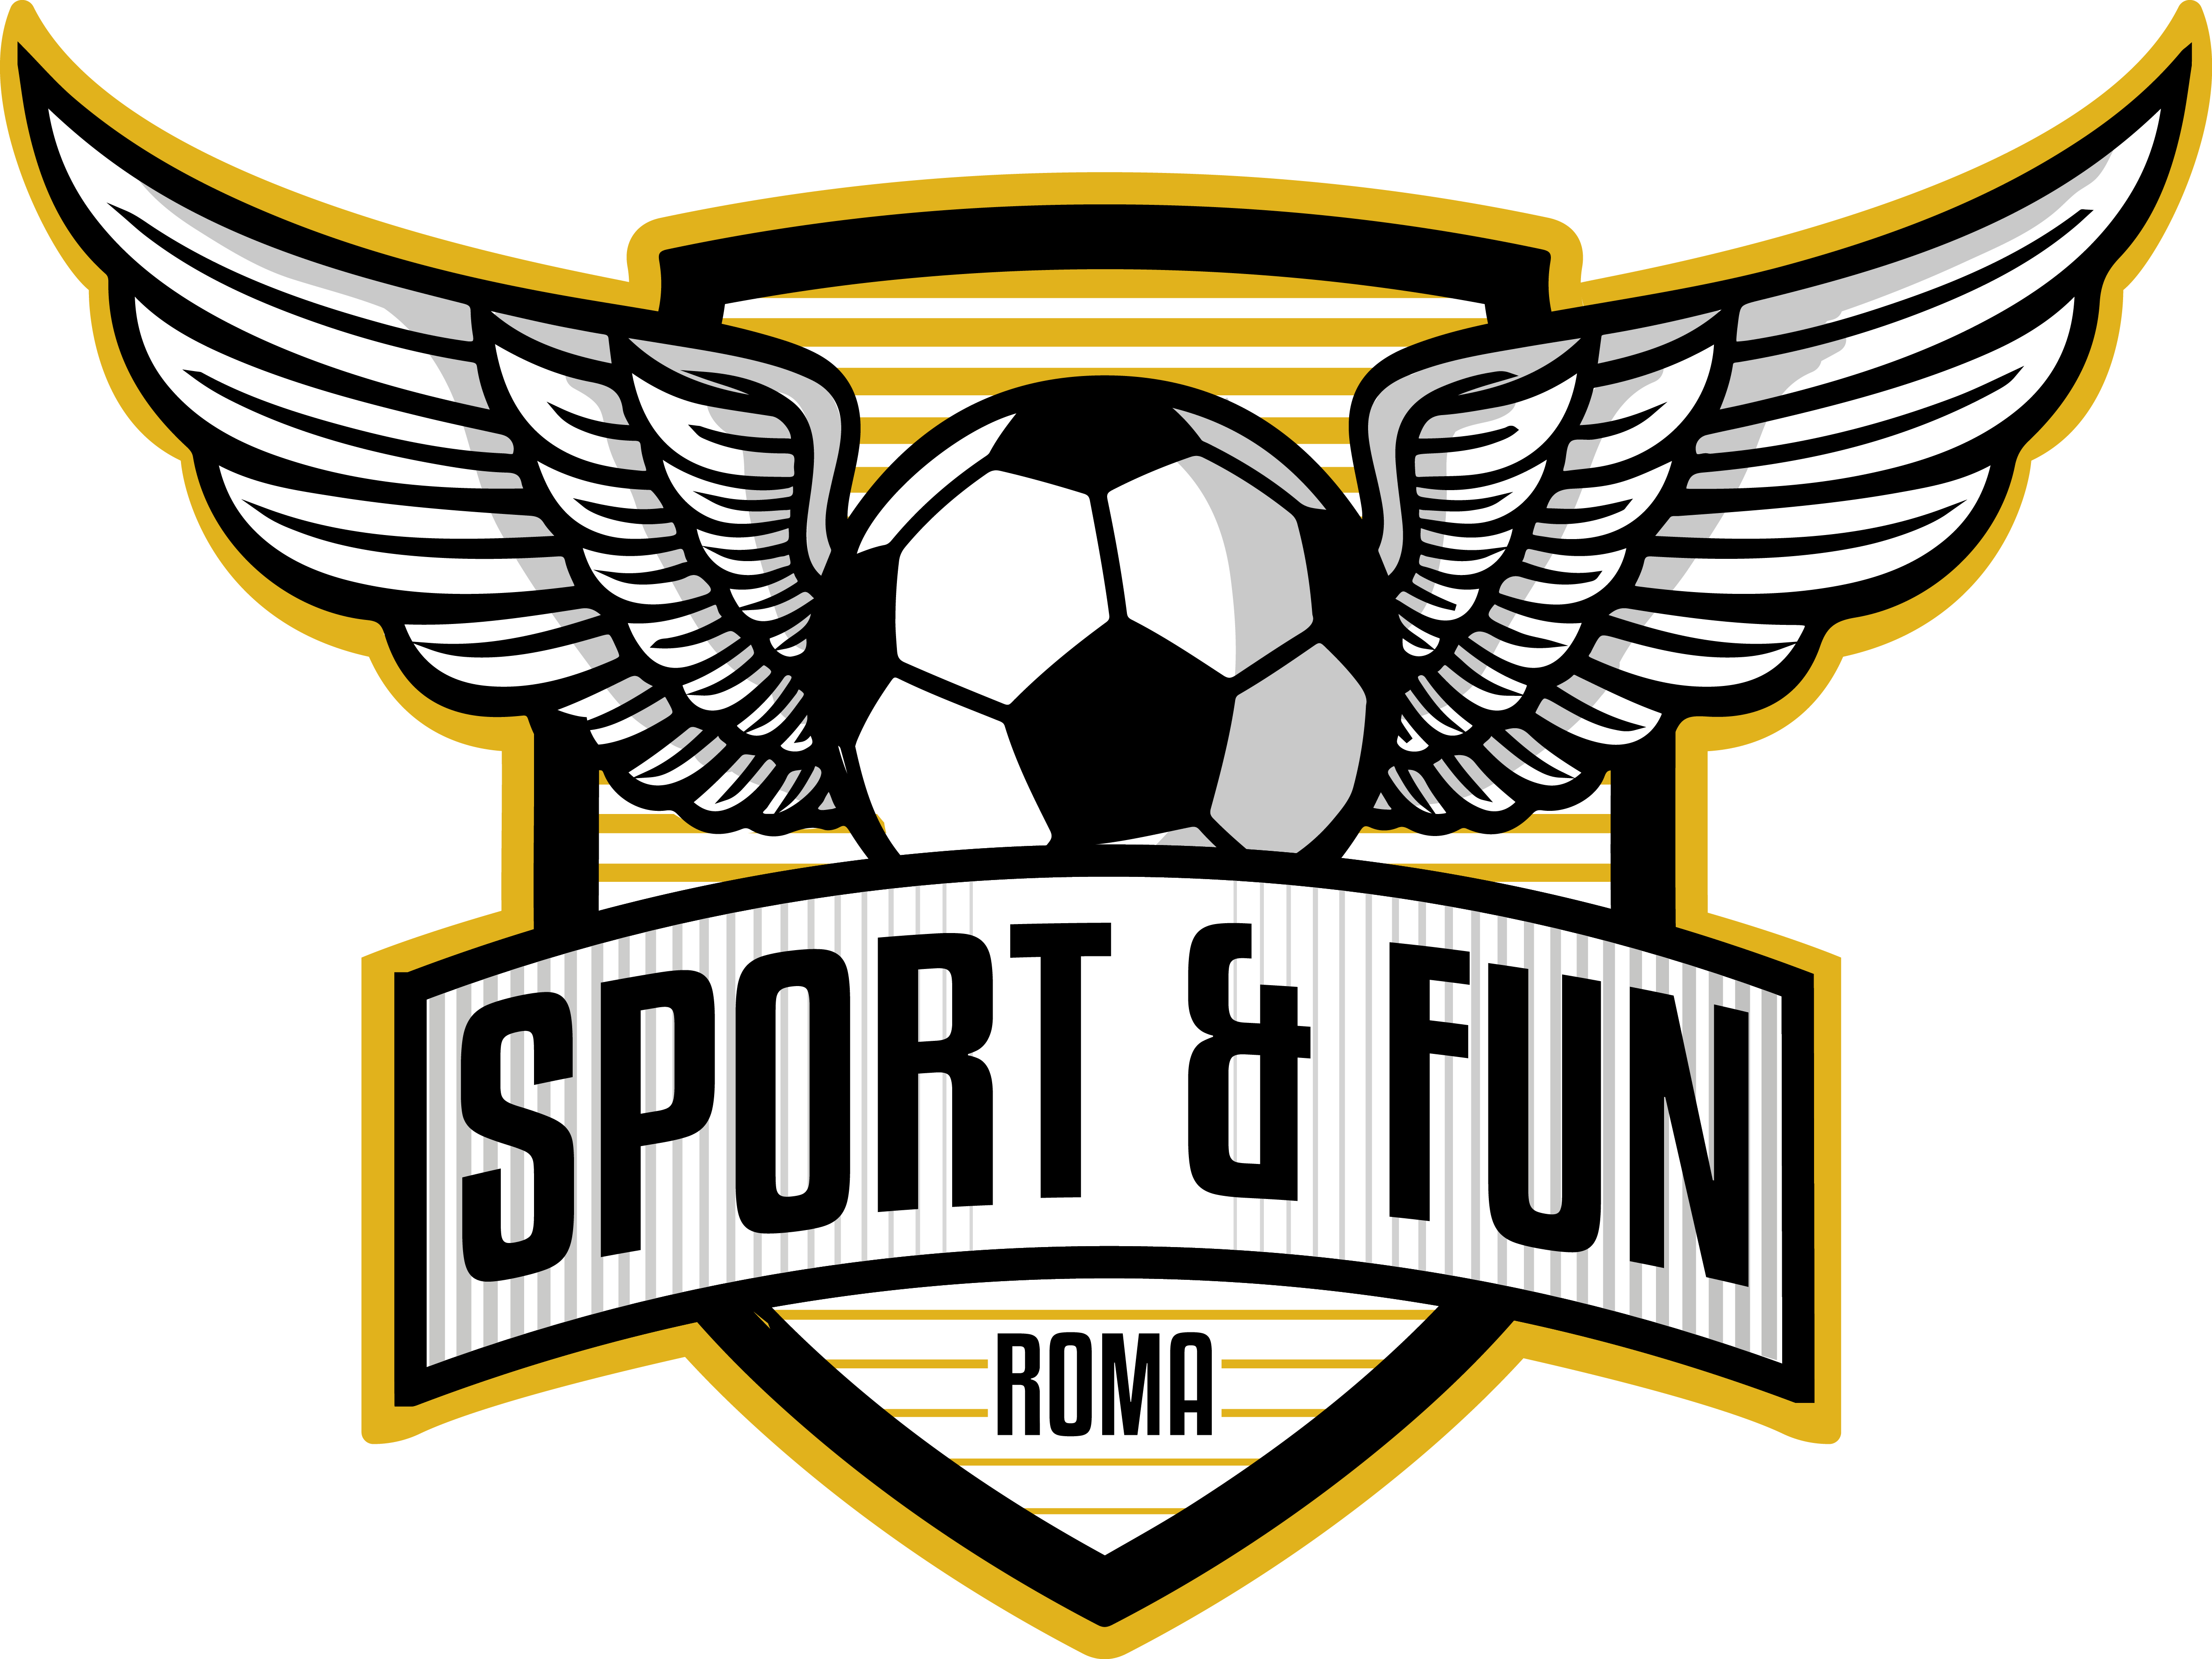 Roma Sport & Fun